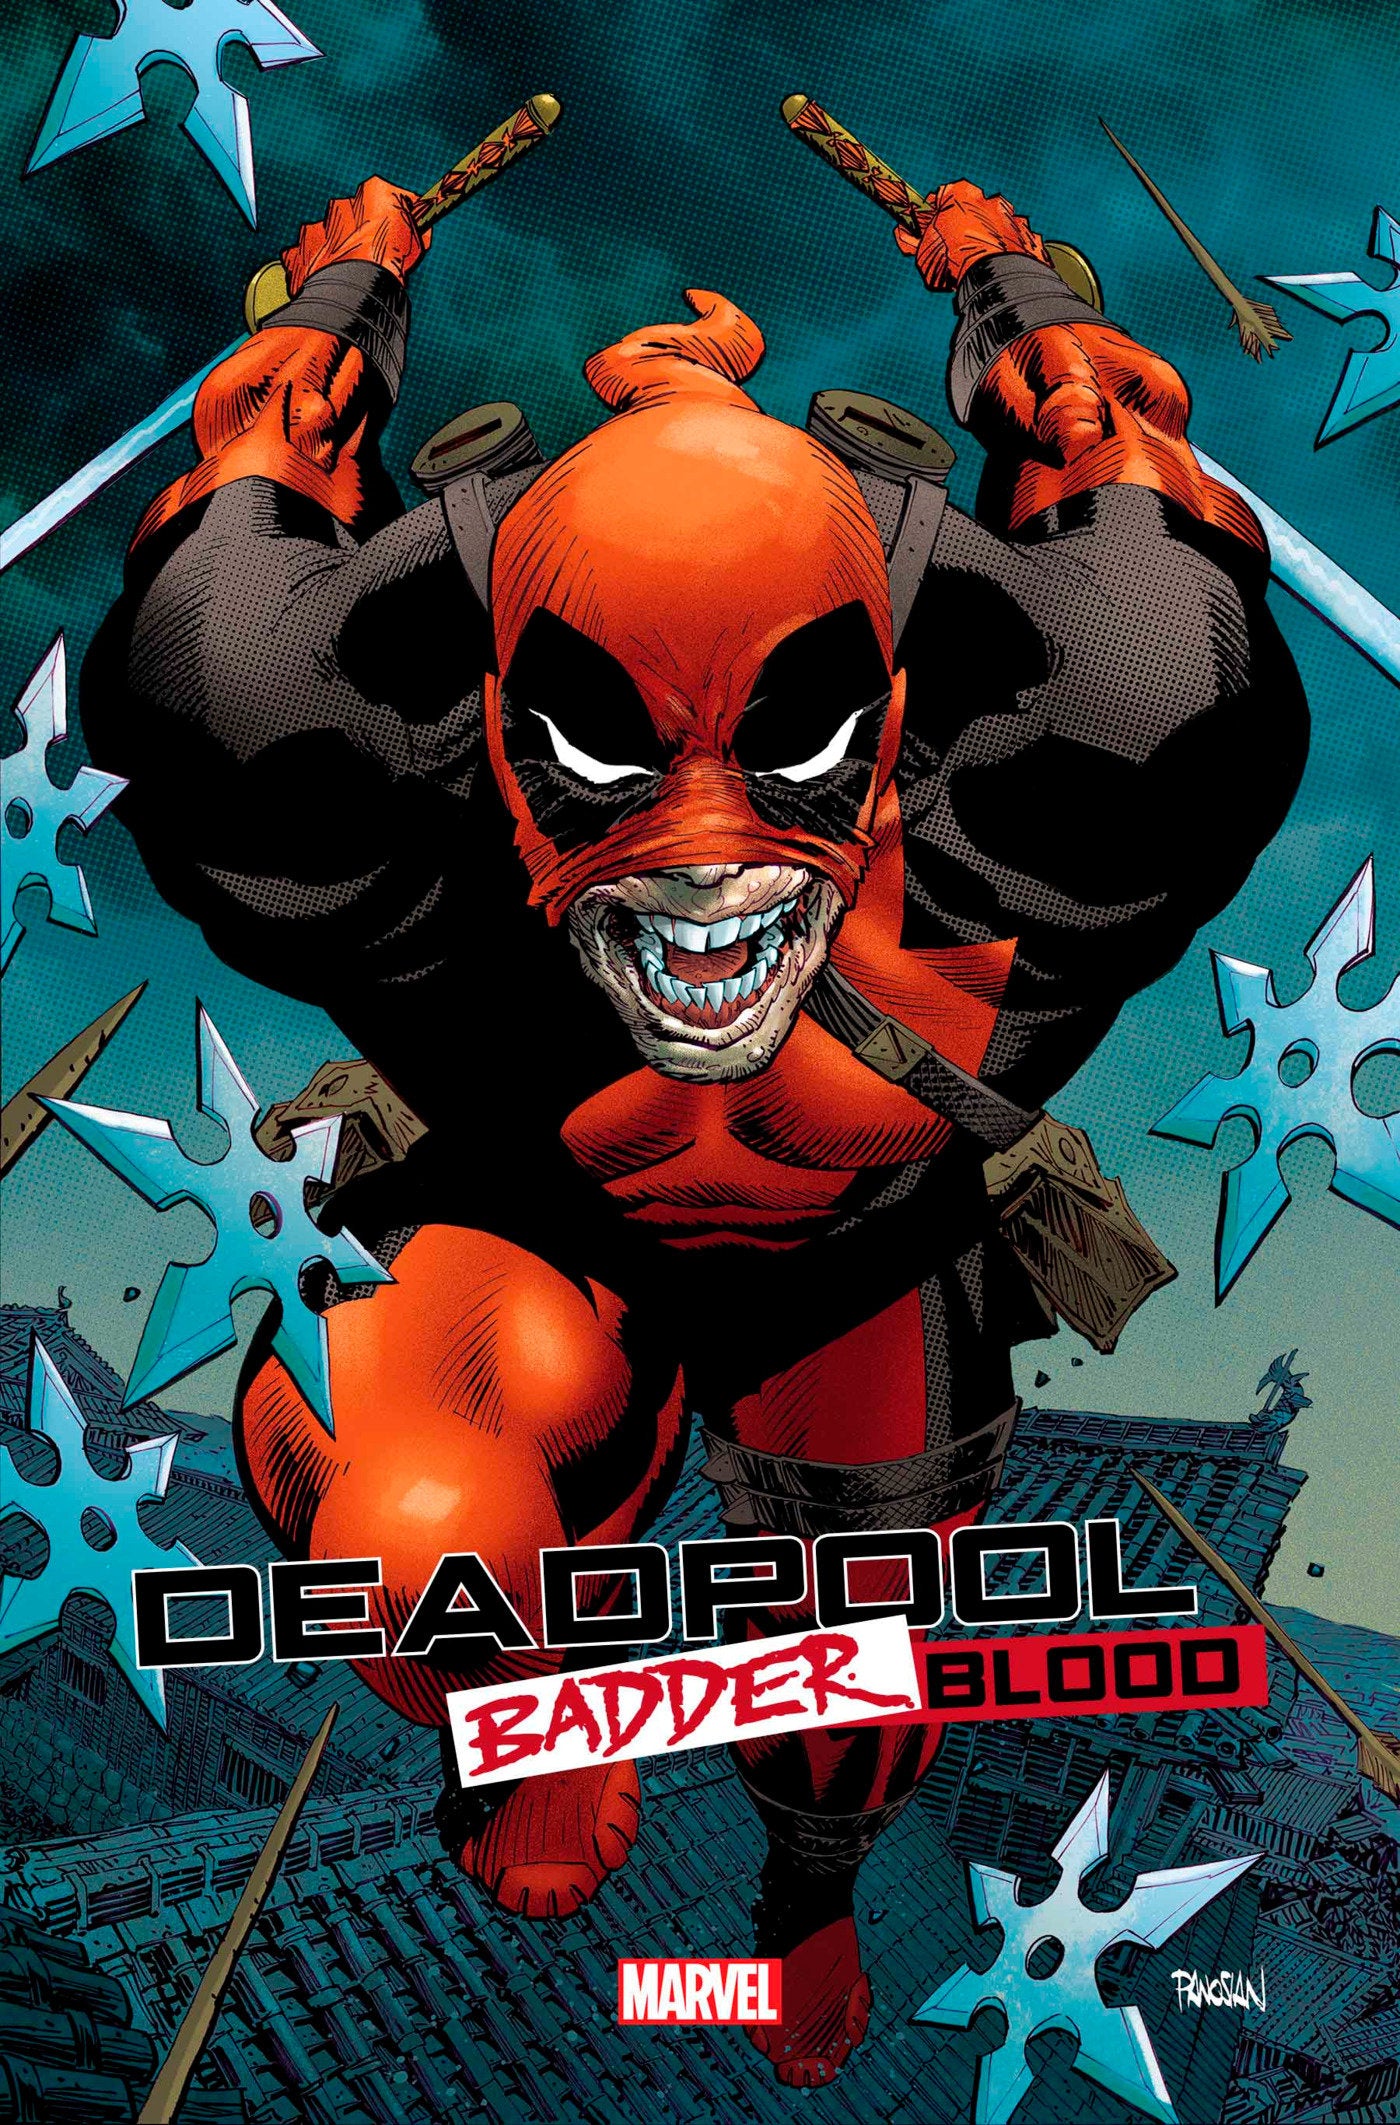 Deadpool: Badder Blood 1 Dan Panosian Variant | L.A. Mood Comics and Games